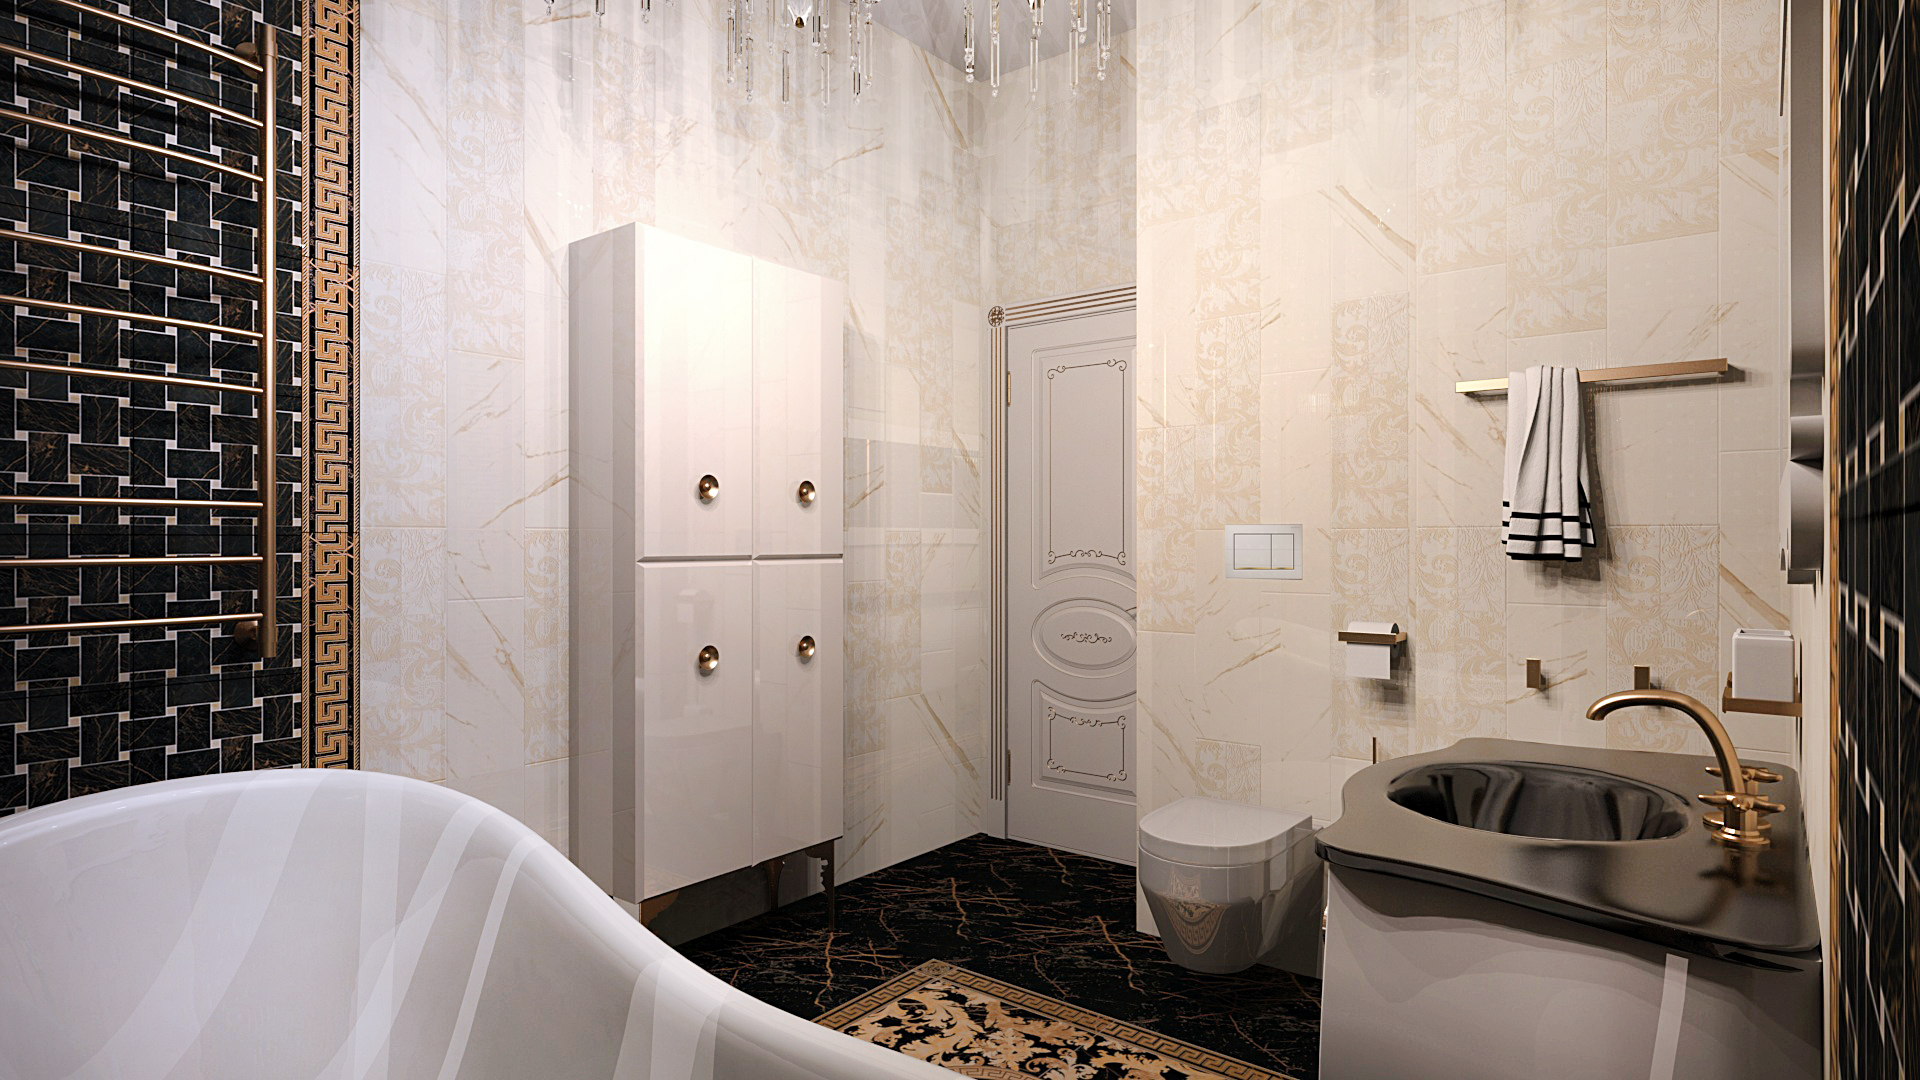 дизайн ванной комнаты, дизайн плитки, дизайн интерьера, дизайн плитки VERSACE, дизайн ванной под ключ